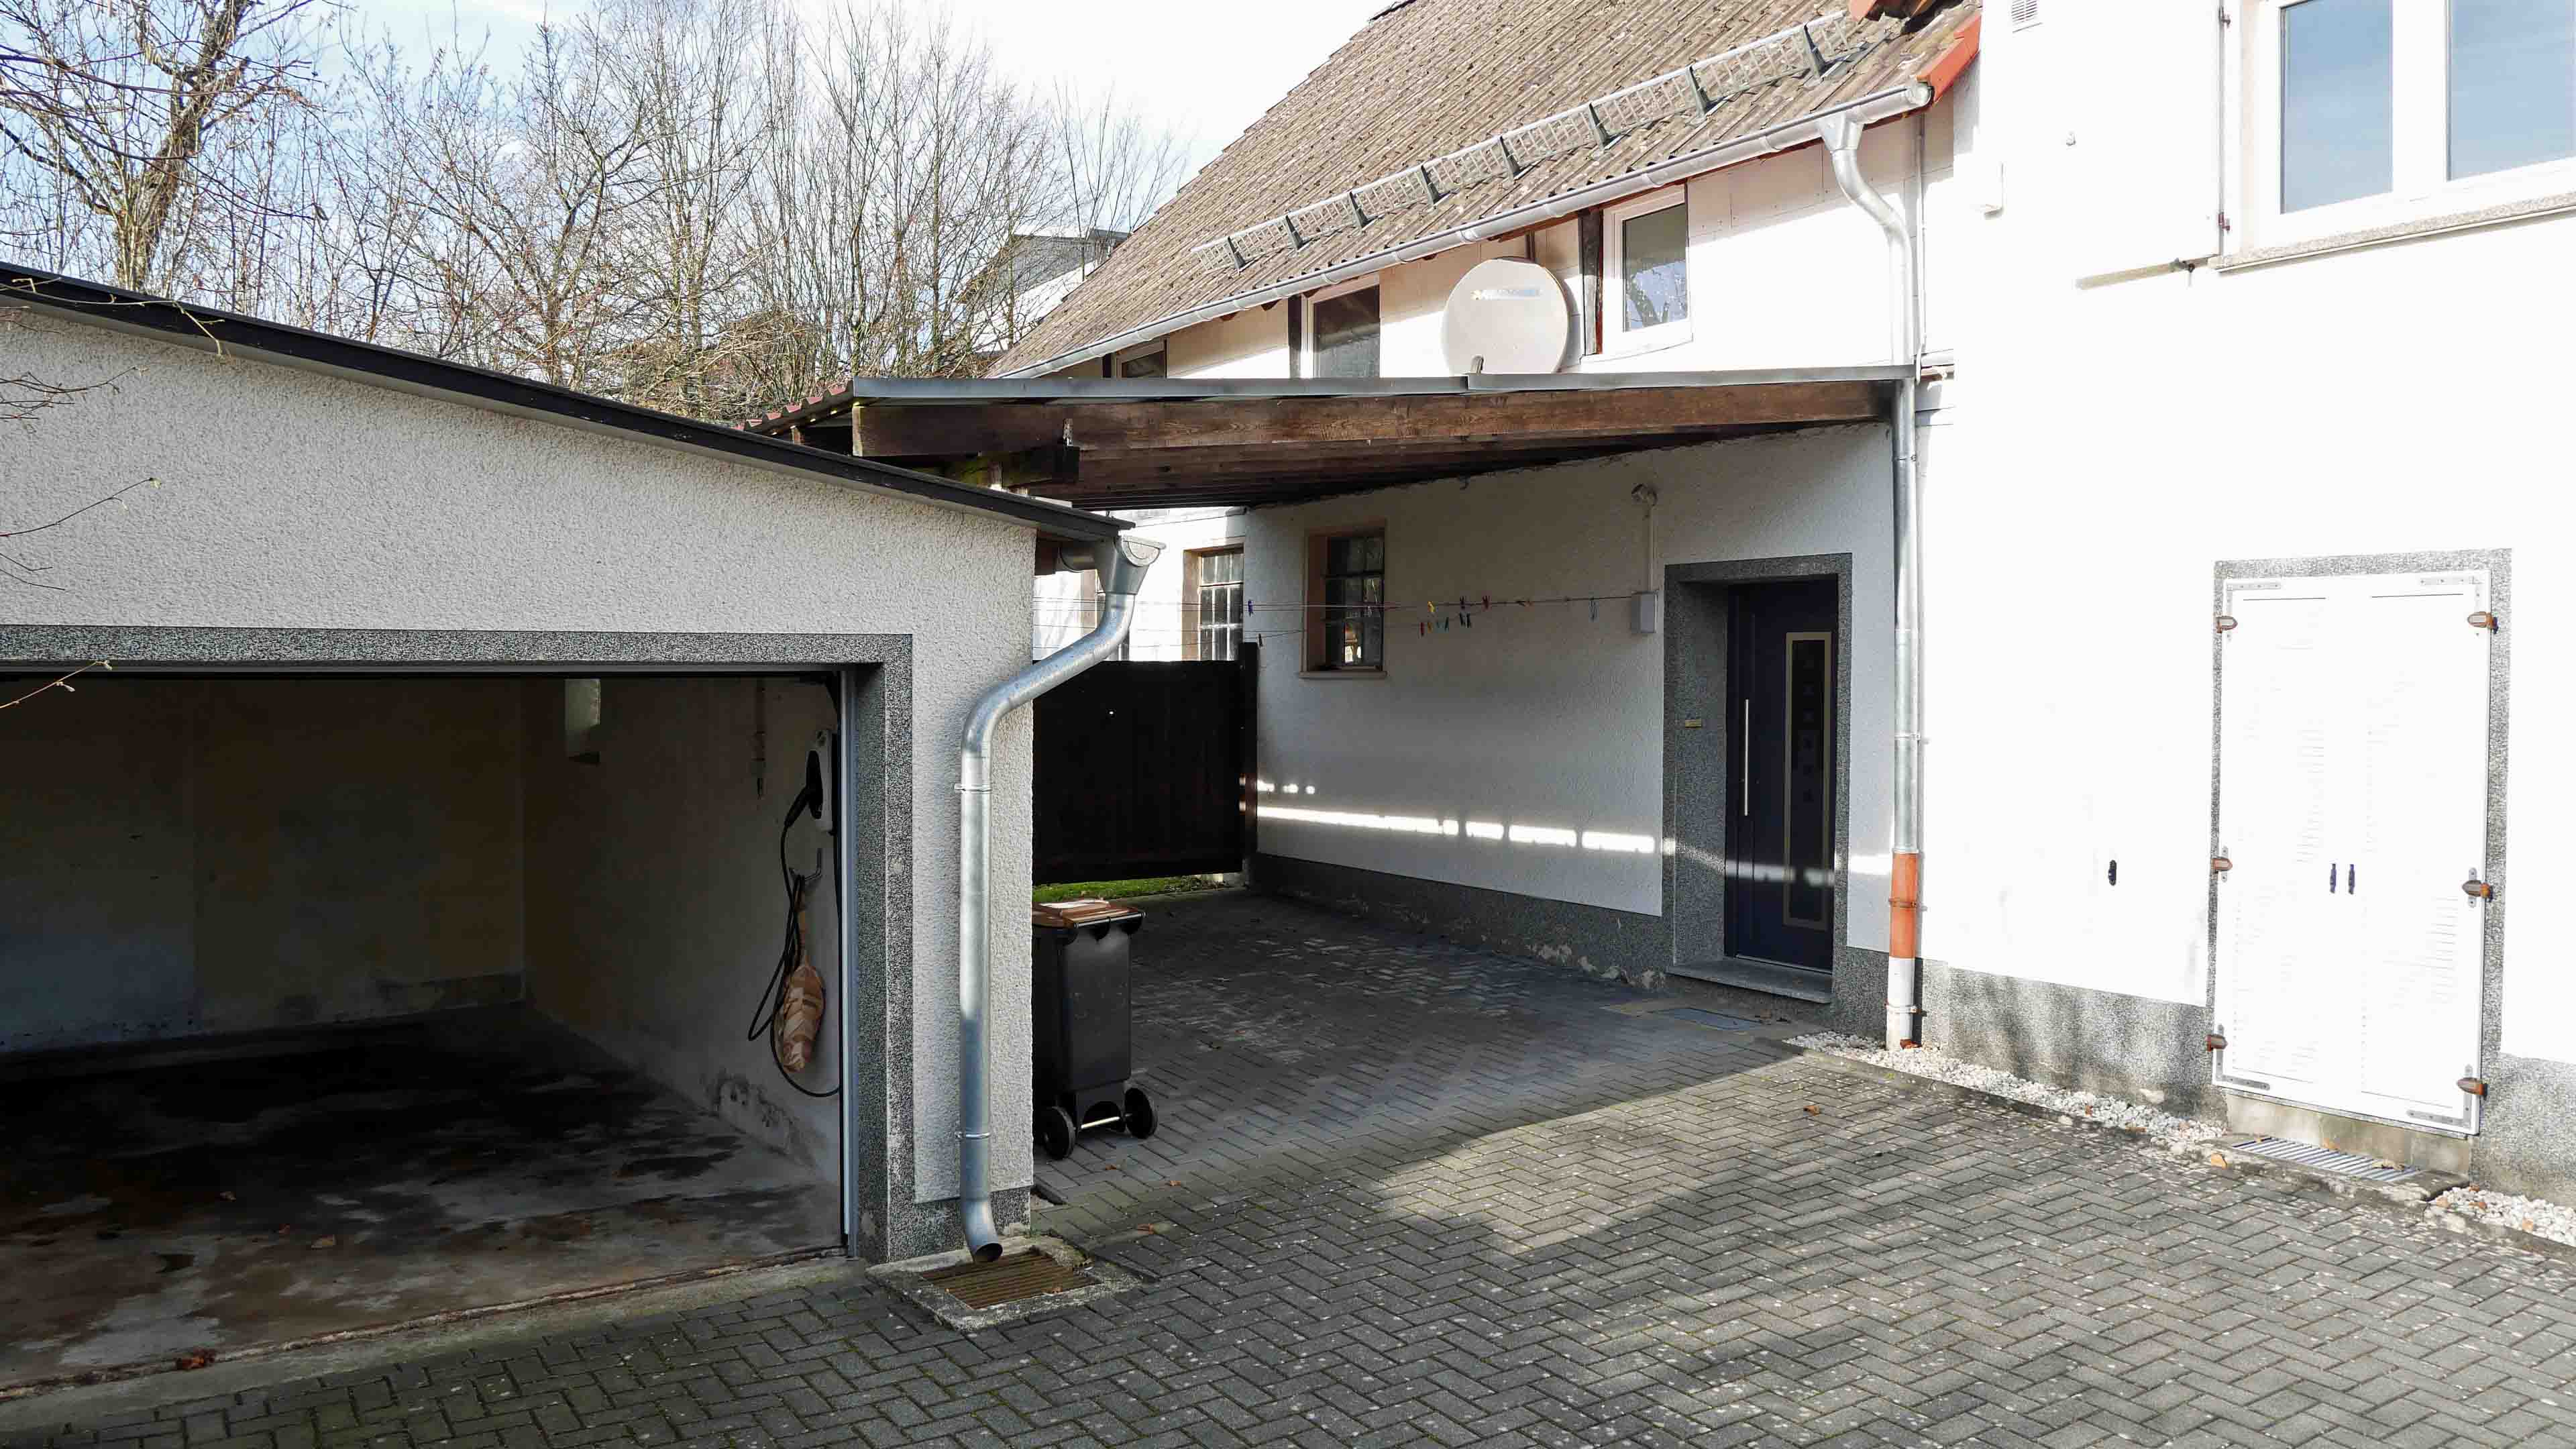 Morsbach-Ortseifen: Bauernhaus mit ELW, 2 Garagen, 2 Carports, Stall und 1,1 ha Weide, ELW 60 m² mit eigener Garage / Carport und...